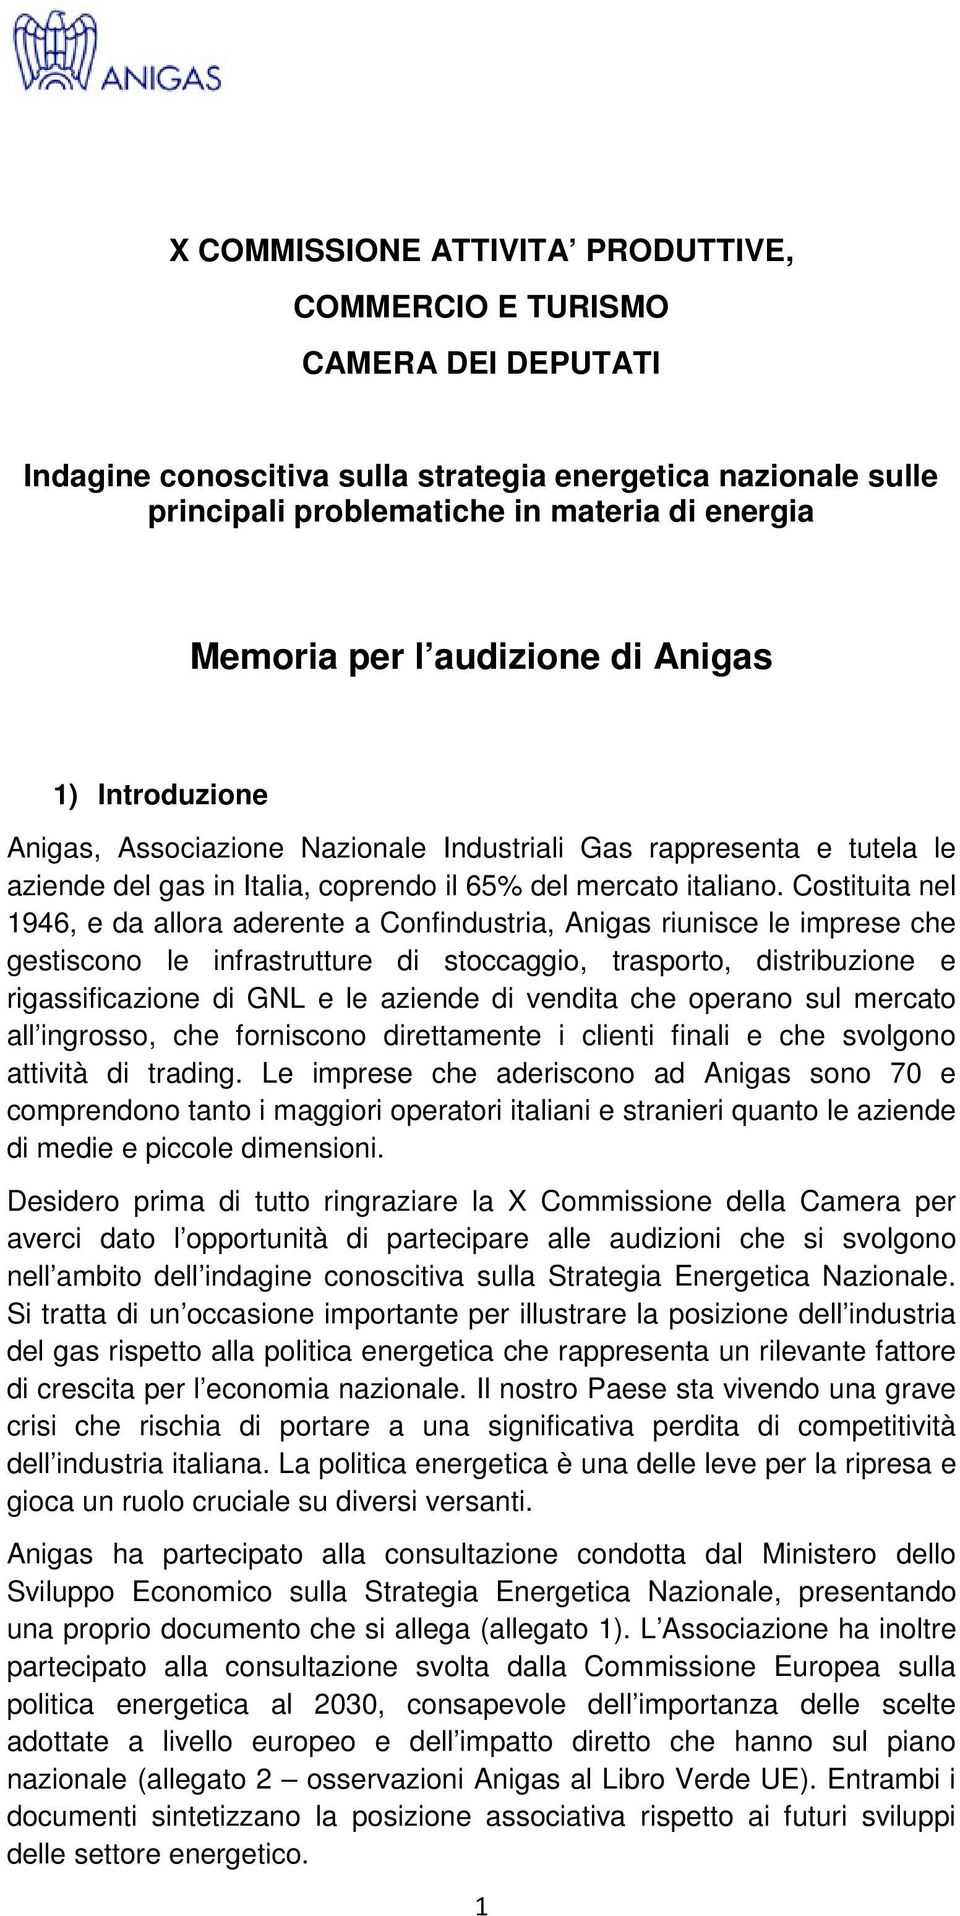 Costituita nel 1946, e da allora aderente a Confindustria, Anigas riunisce le imprese che gestiscono le infrastrutture di stoccaggio, trasporto, distribuzione e rigassificazione di GNL e le aziende